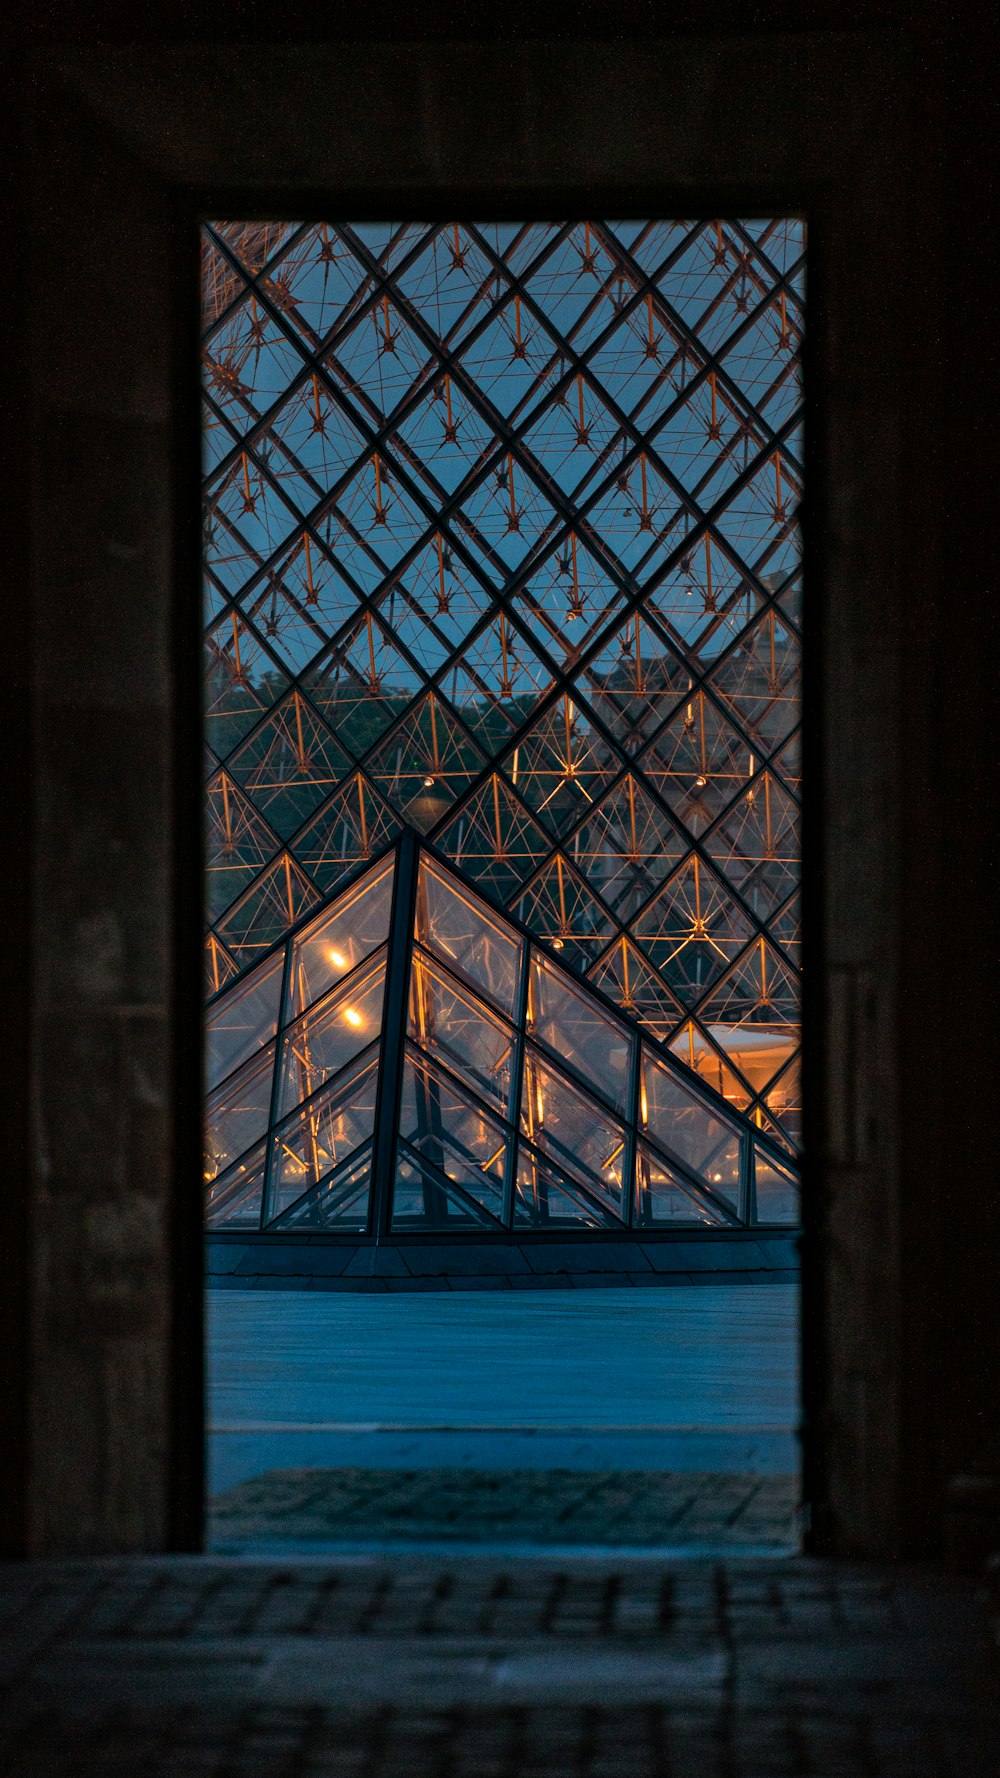 finestra di vetro incorniciata nera durante la notte